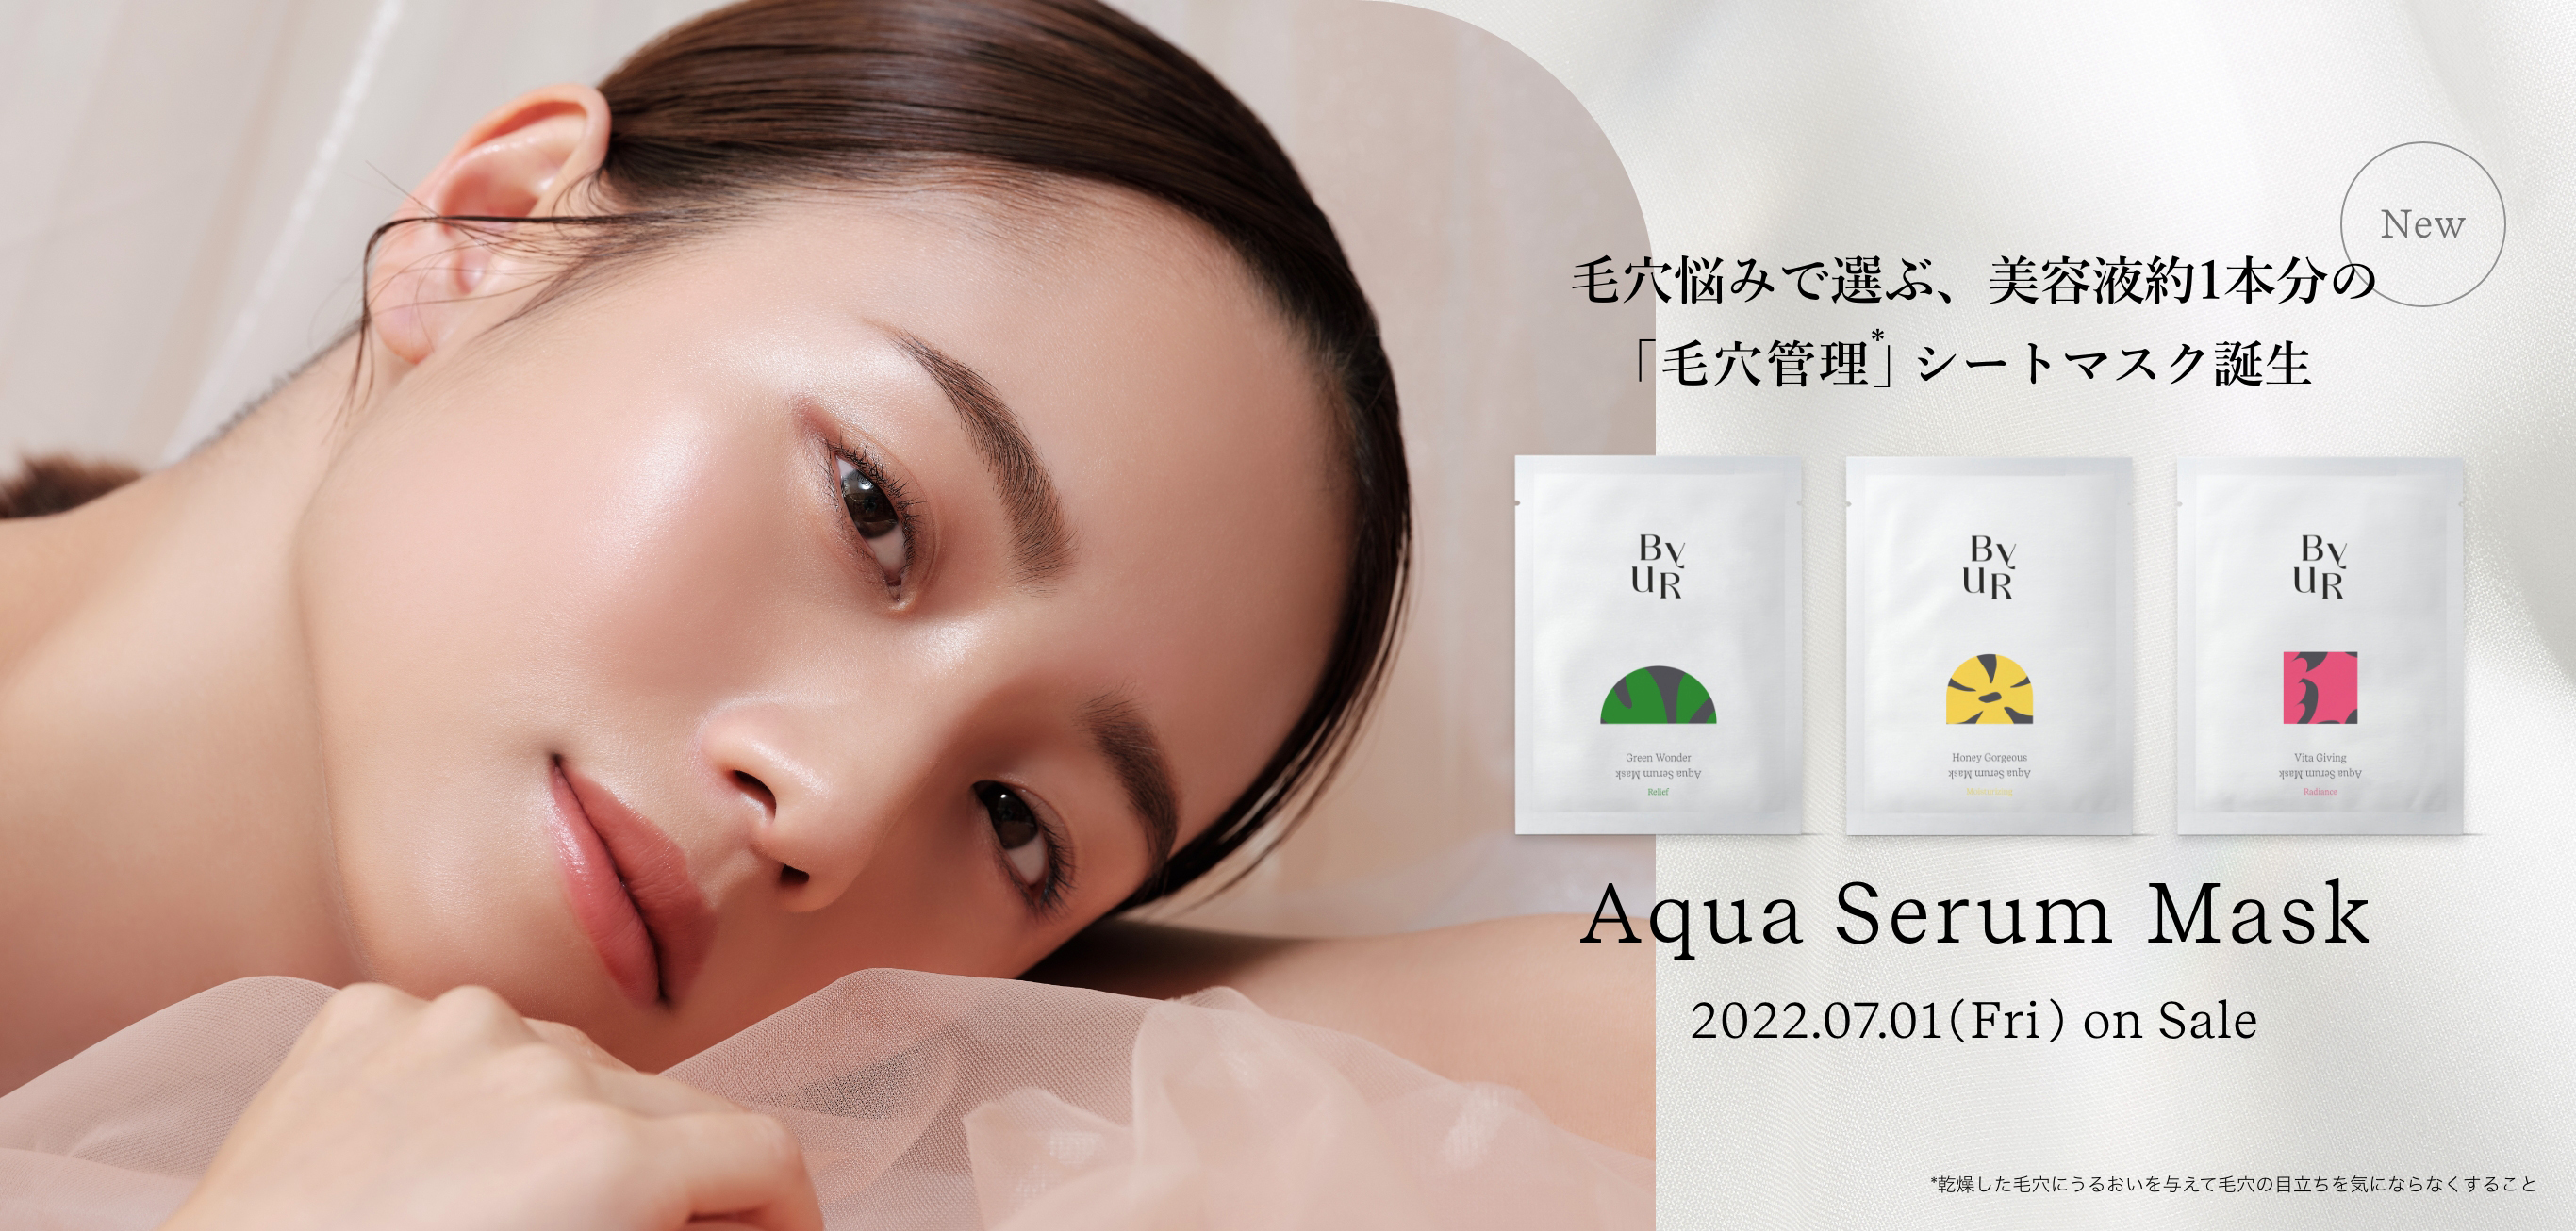 毛穴悩みで選ぶ、美容液約1本分の「毛穴管理」*シートマスク Aqua Serum Mask 2022.07.01(Fri) on Sale